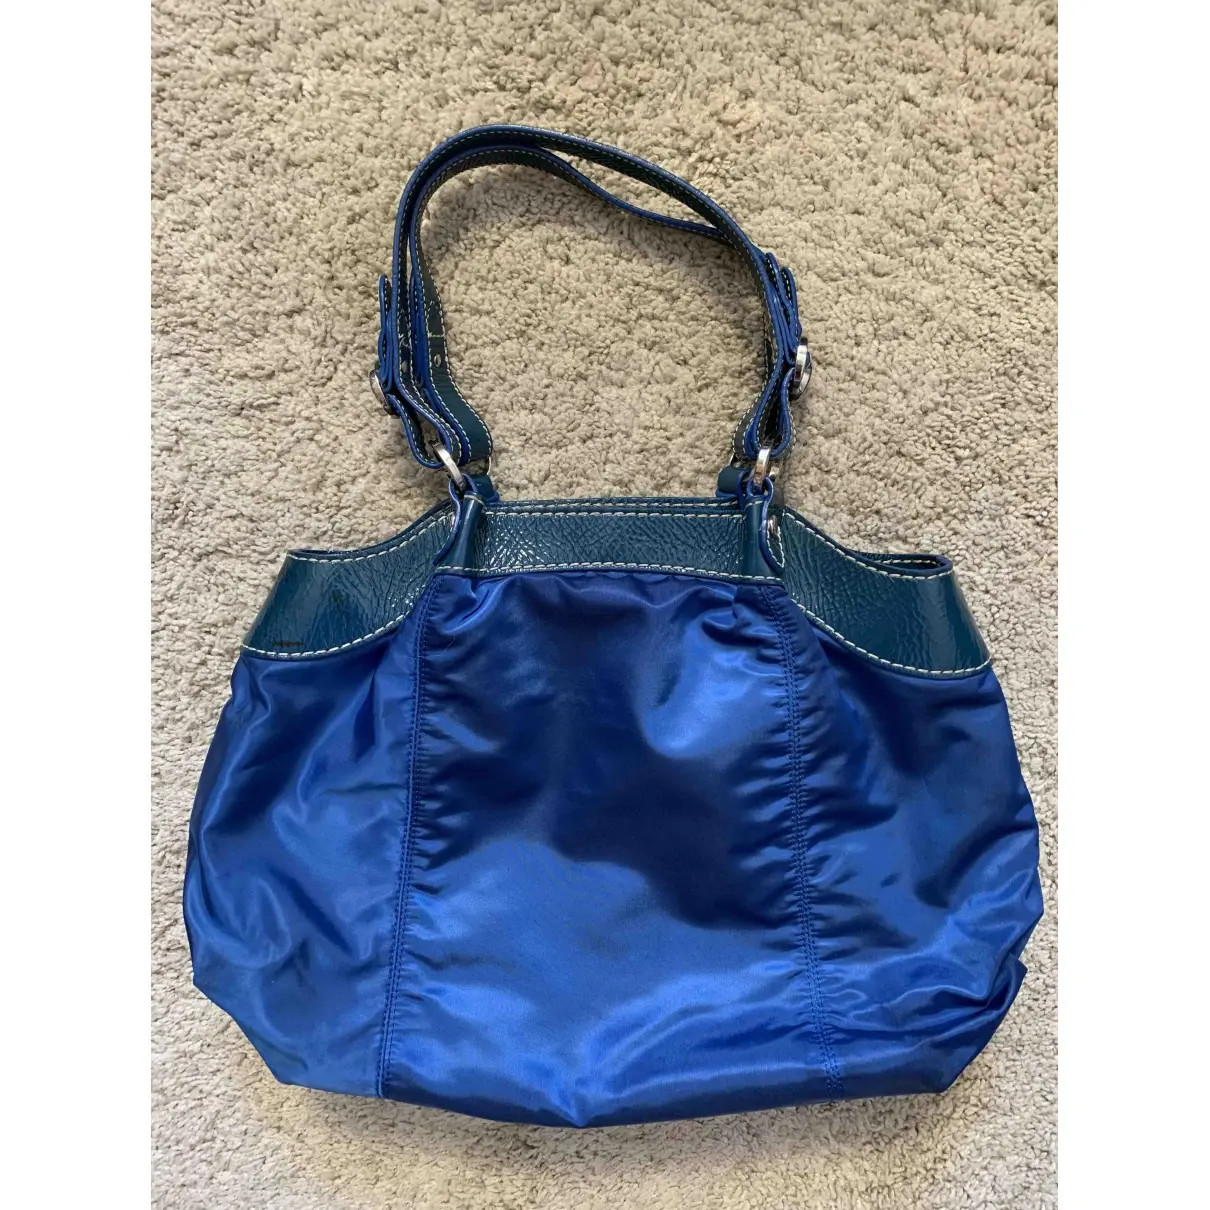 Hogan Cloth handbag for sale